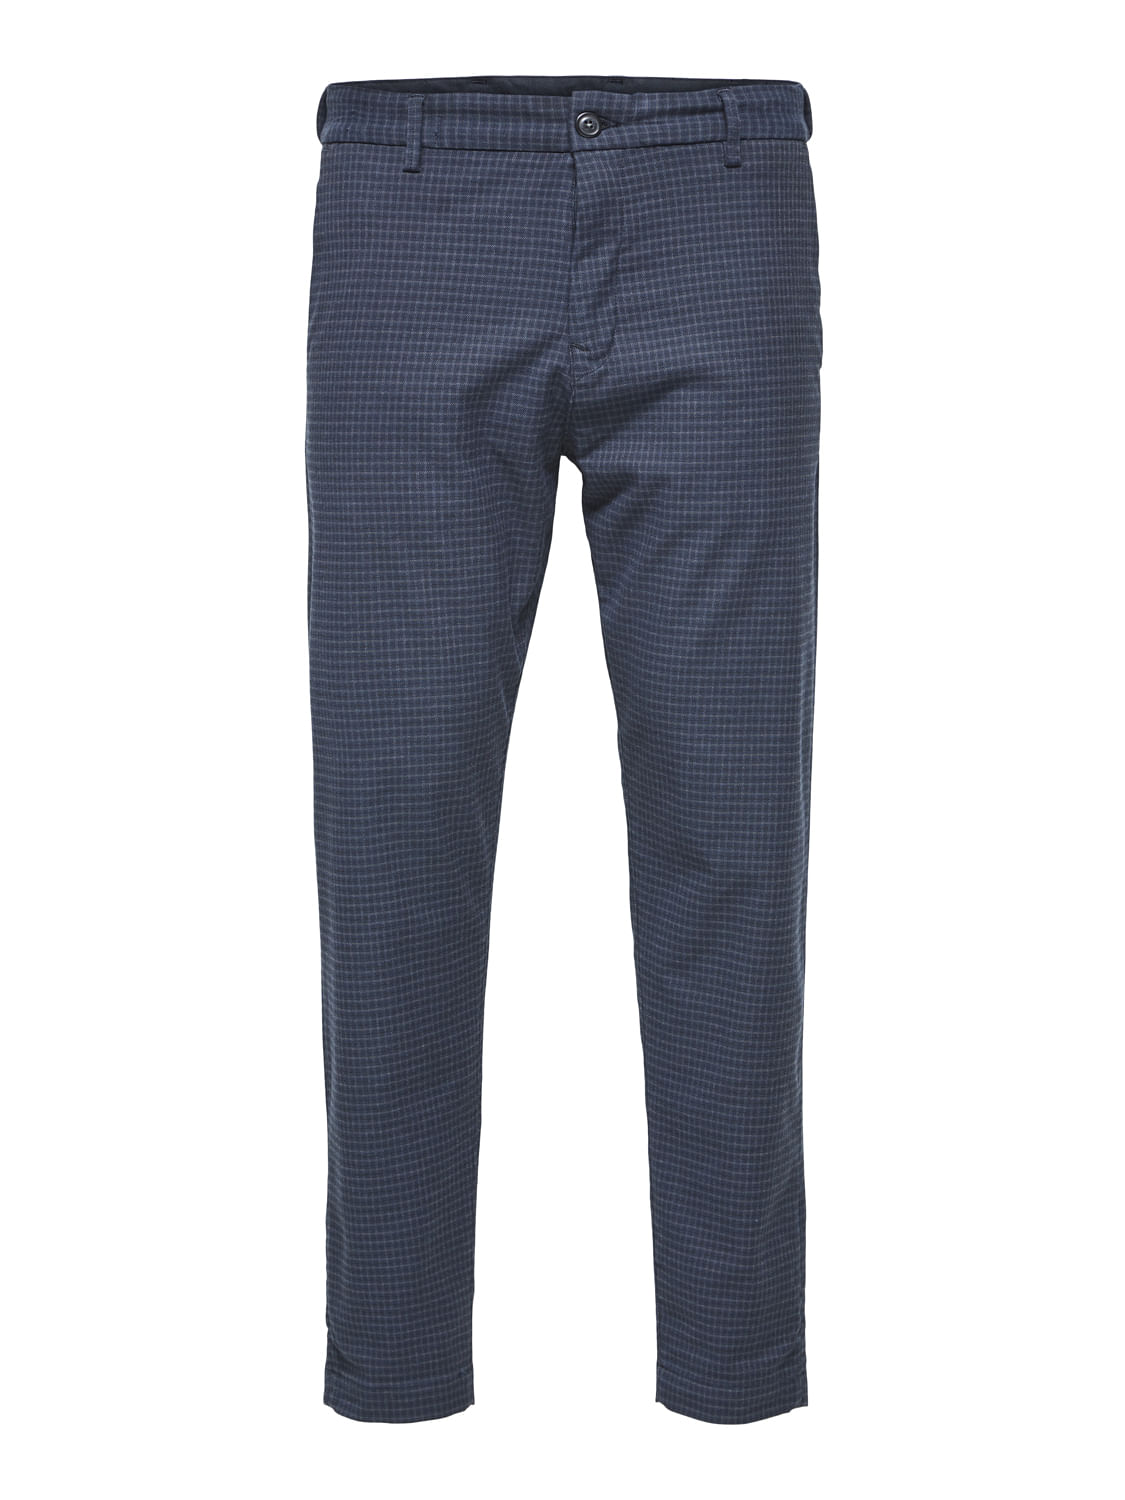 navy blue slim fit suit trousers